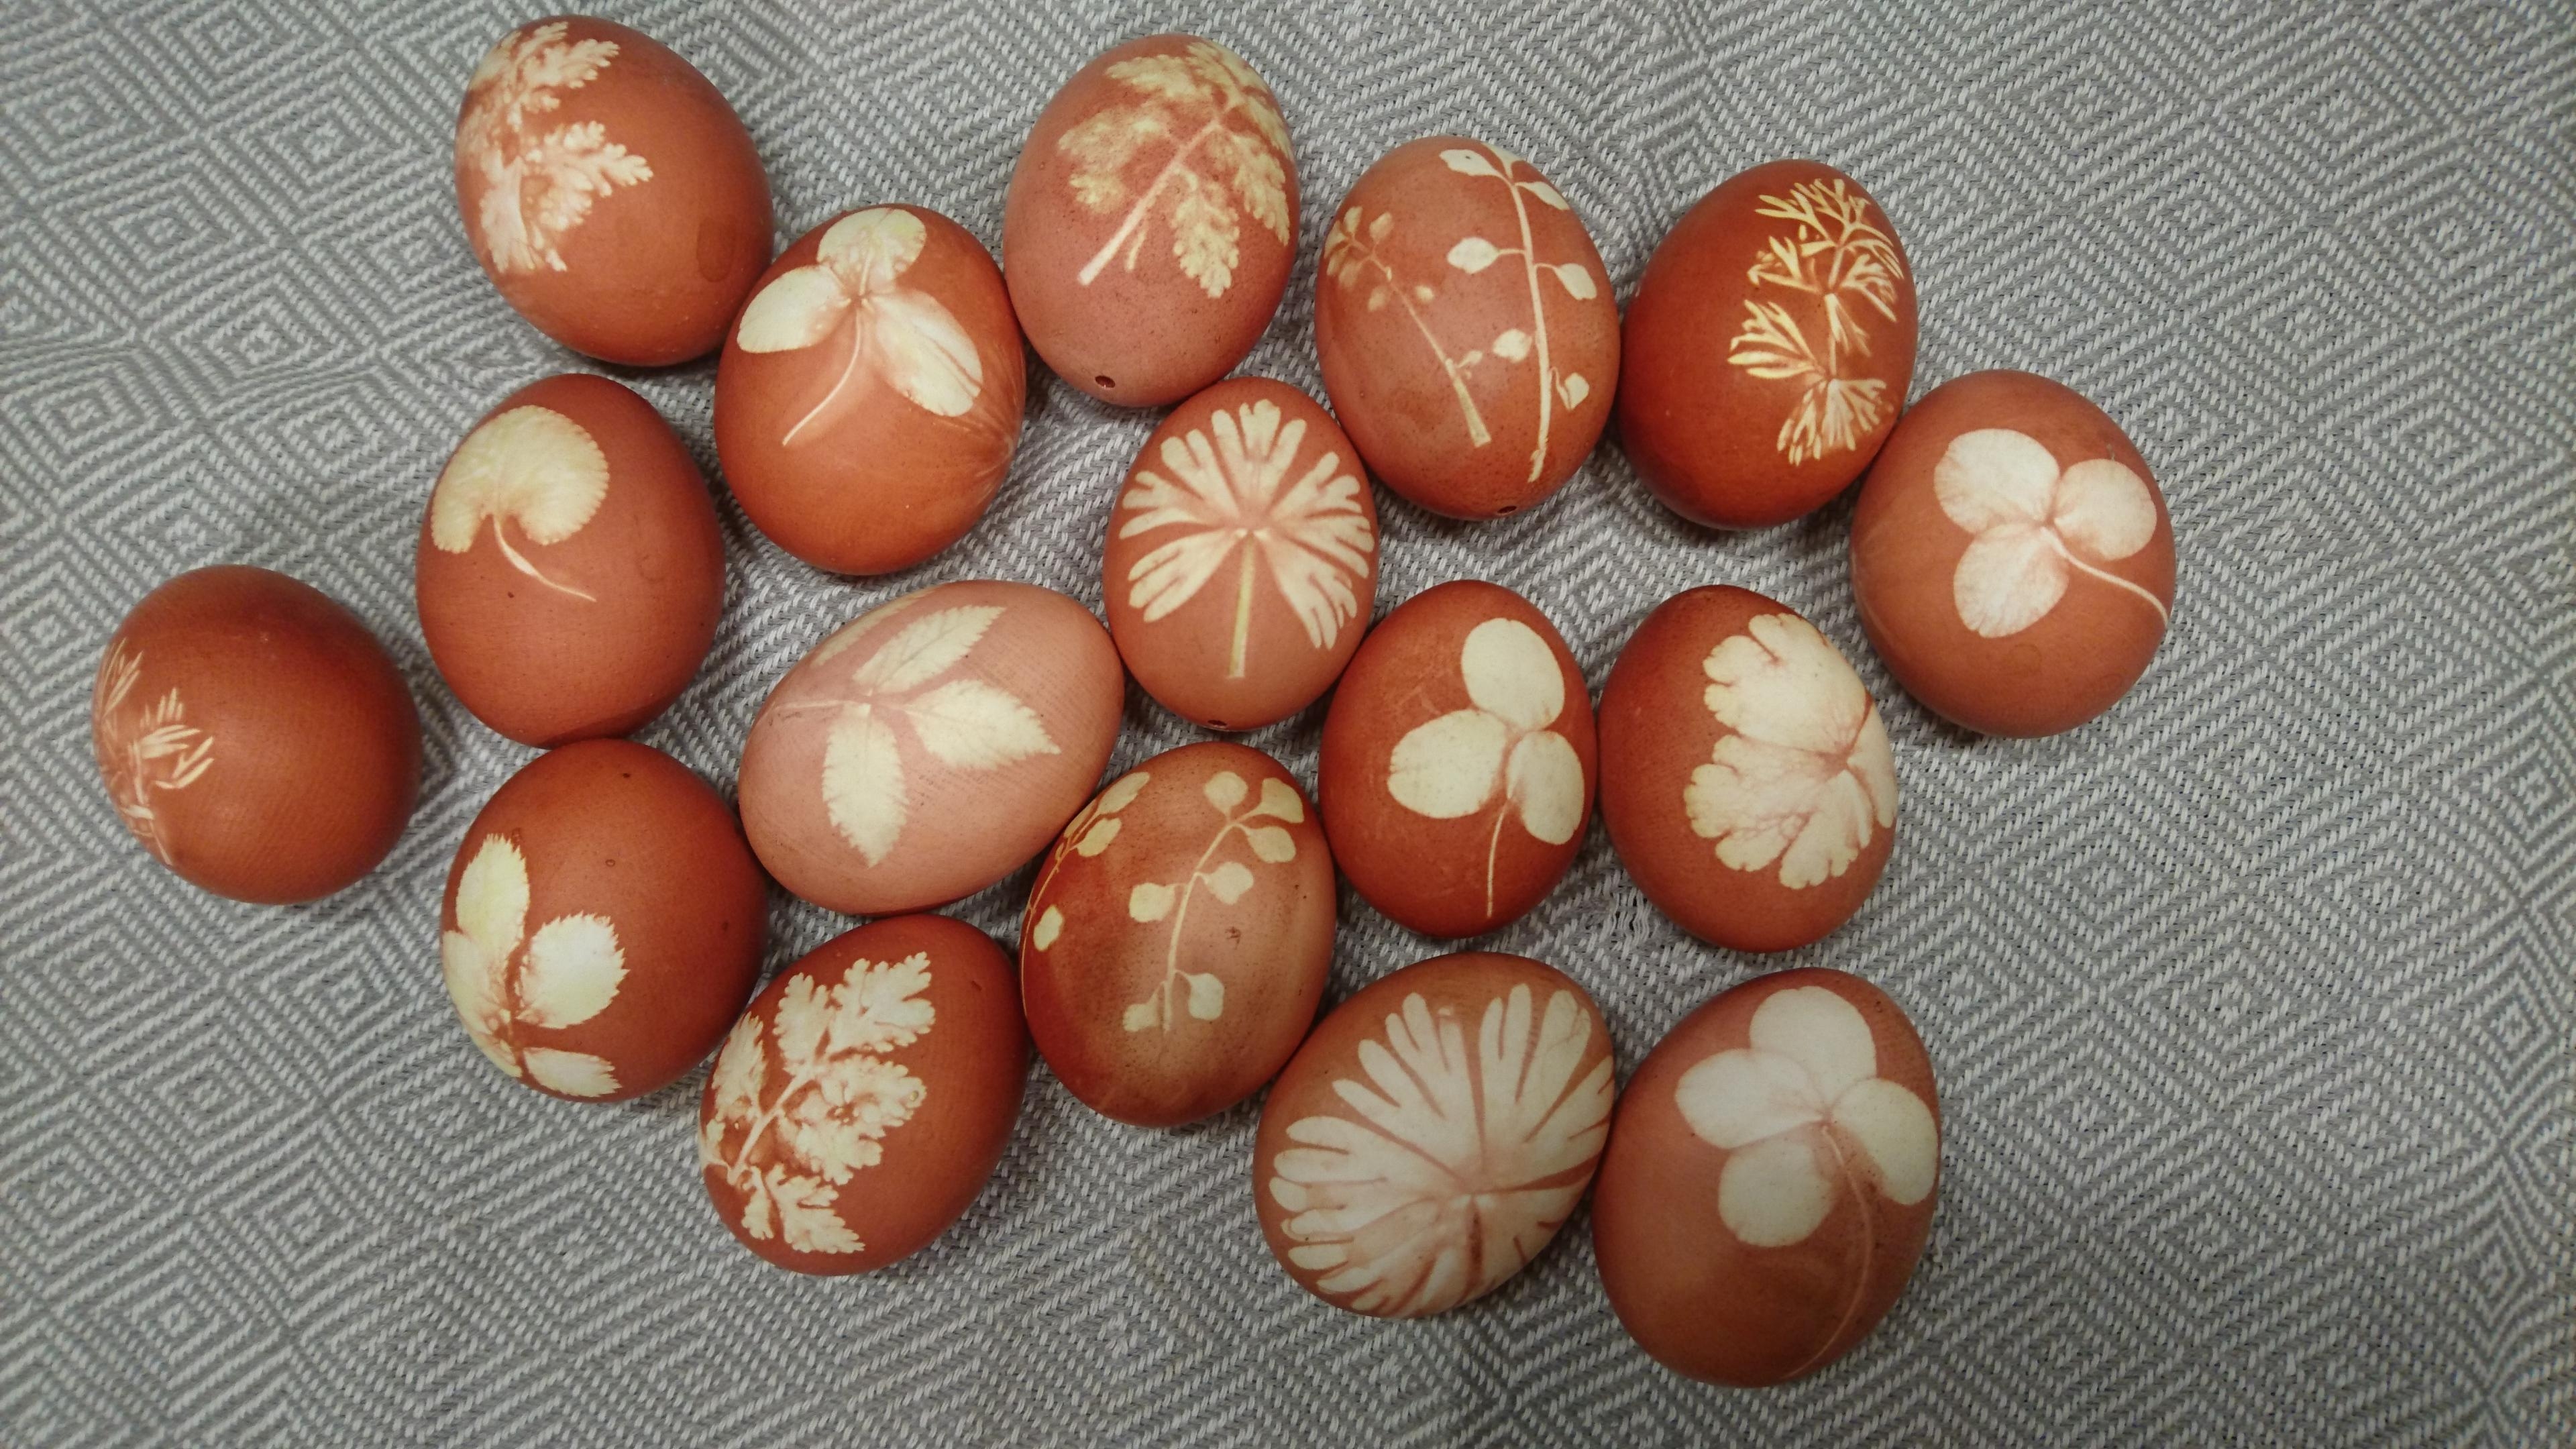 Ich liebe es Ostereier natürlich zu färben. Hier beispielsweise mit Zwiebelschalen.
#Ostern #diy #Ostern #Natur 